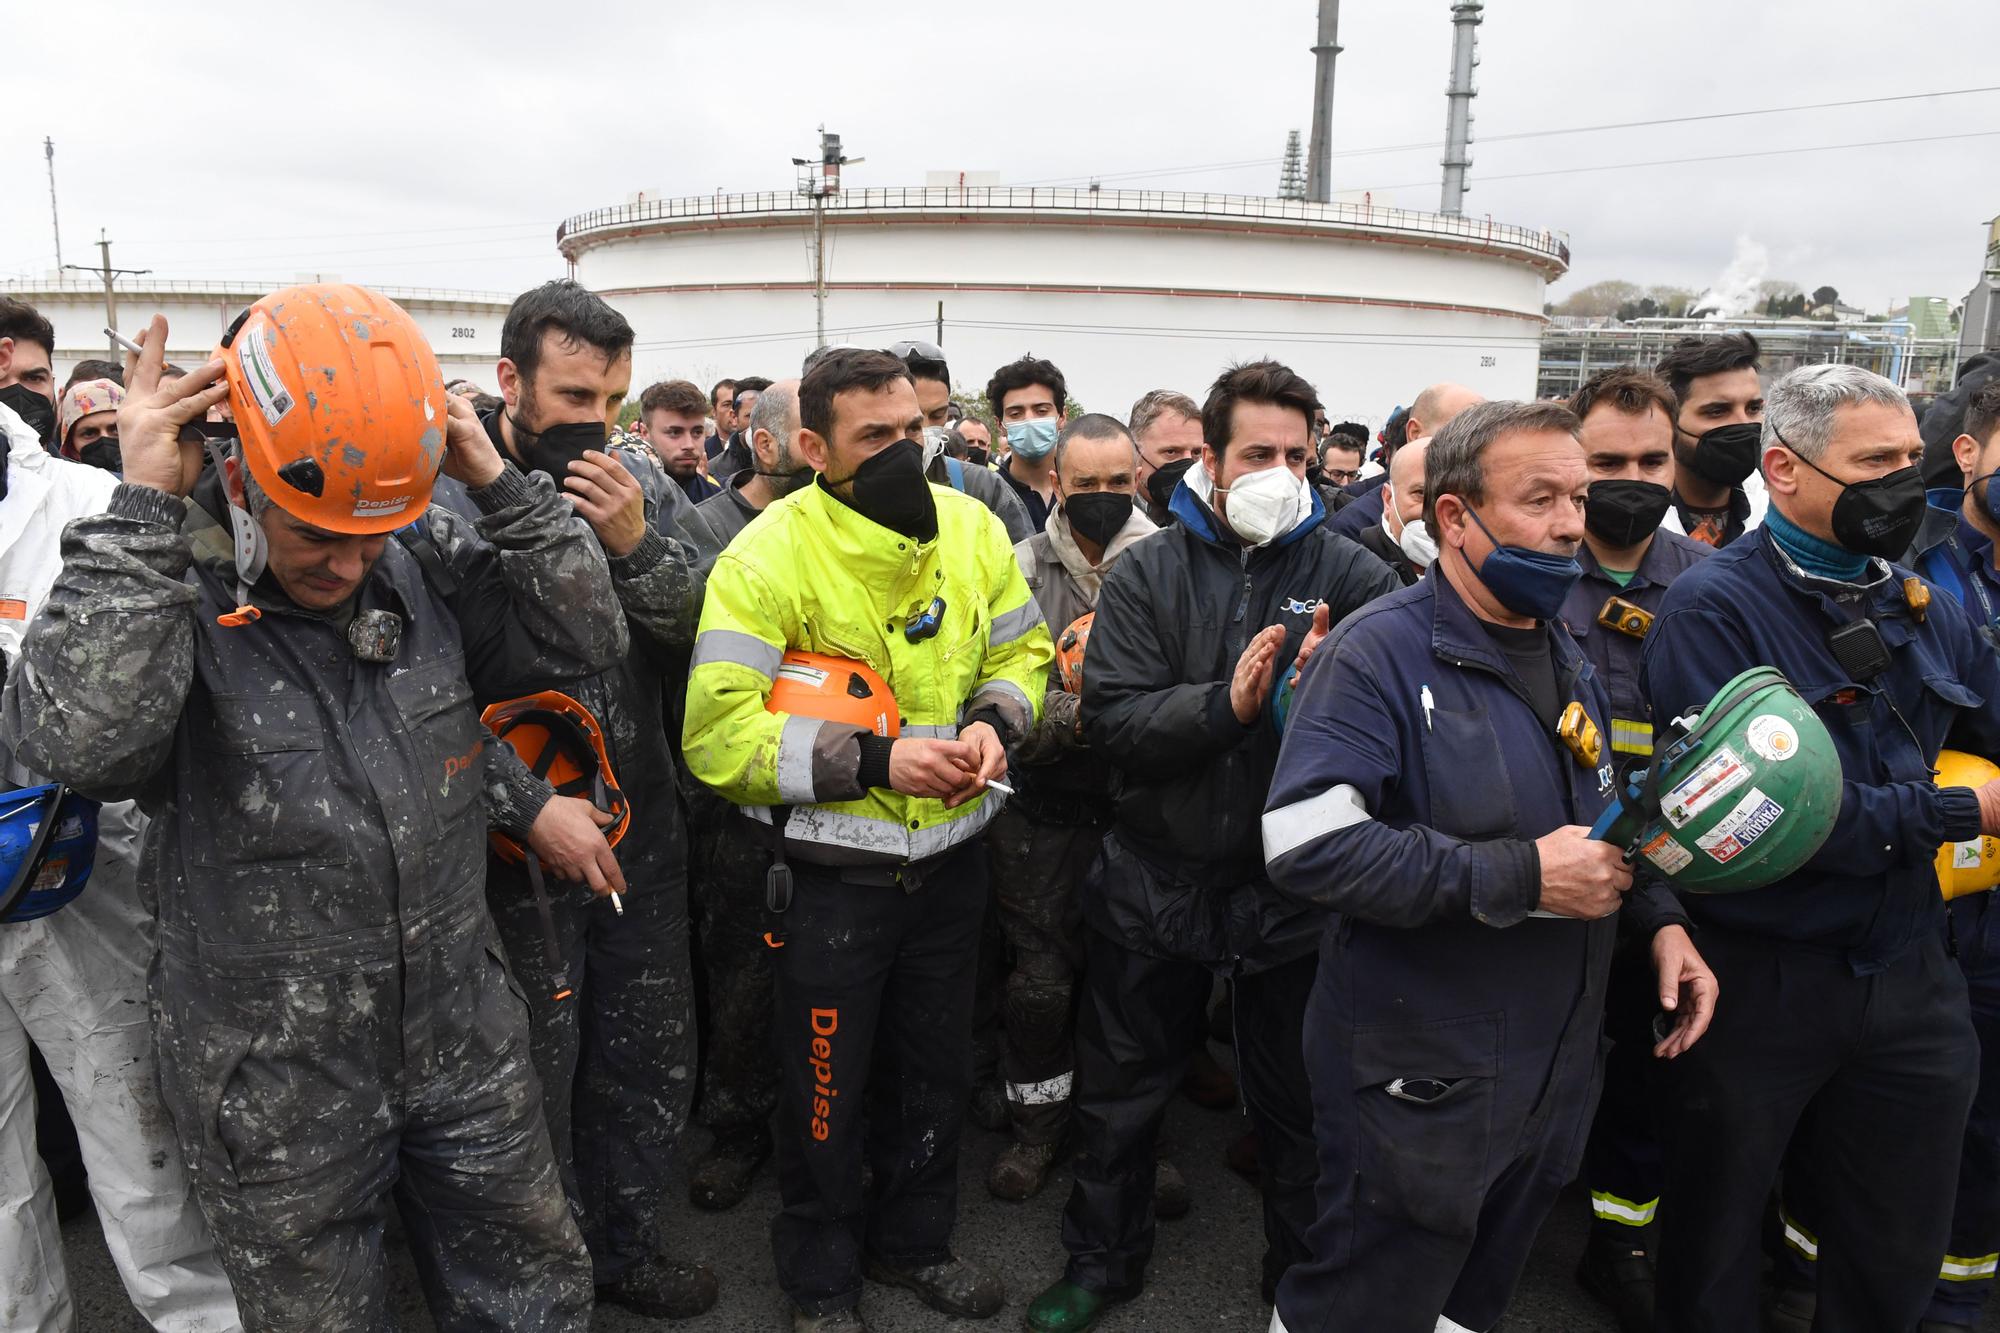 Concentración en la refinería de A Coruña tras el accidente con dos heridos, uno muy grave